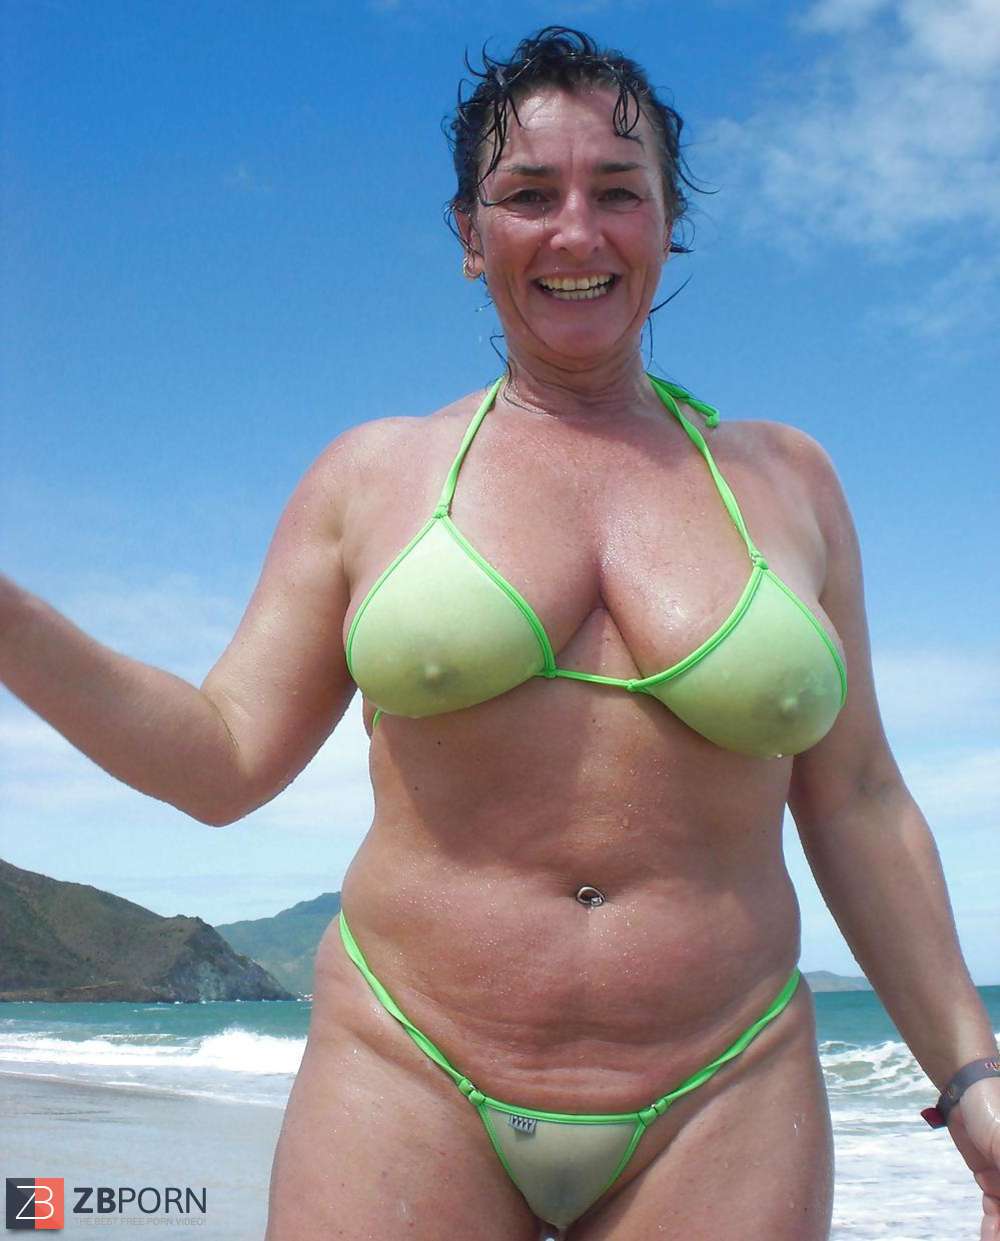 Mature public voyeur beach bikini